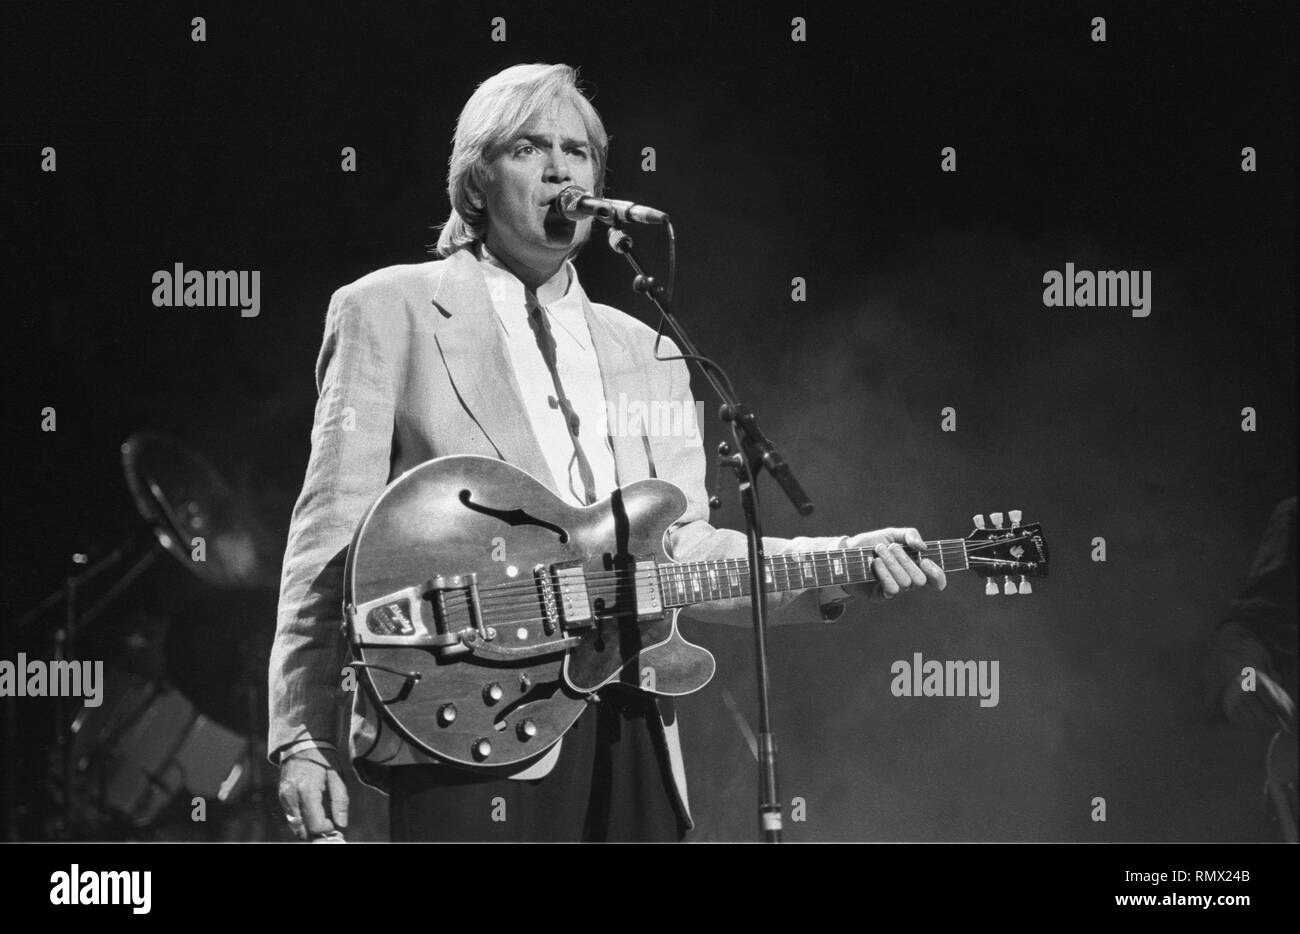 Cantante, compositore e chitarrista Justin Hayward della rock band The Moody Blues è mostrato esibirsi sul palco durante un 'live' aspetto di concerto. Foto Stock